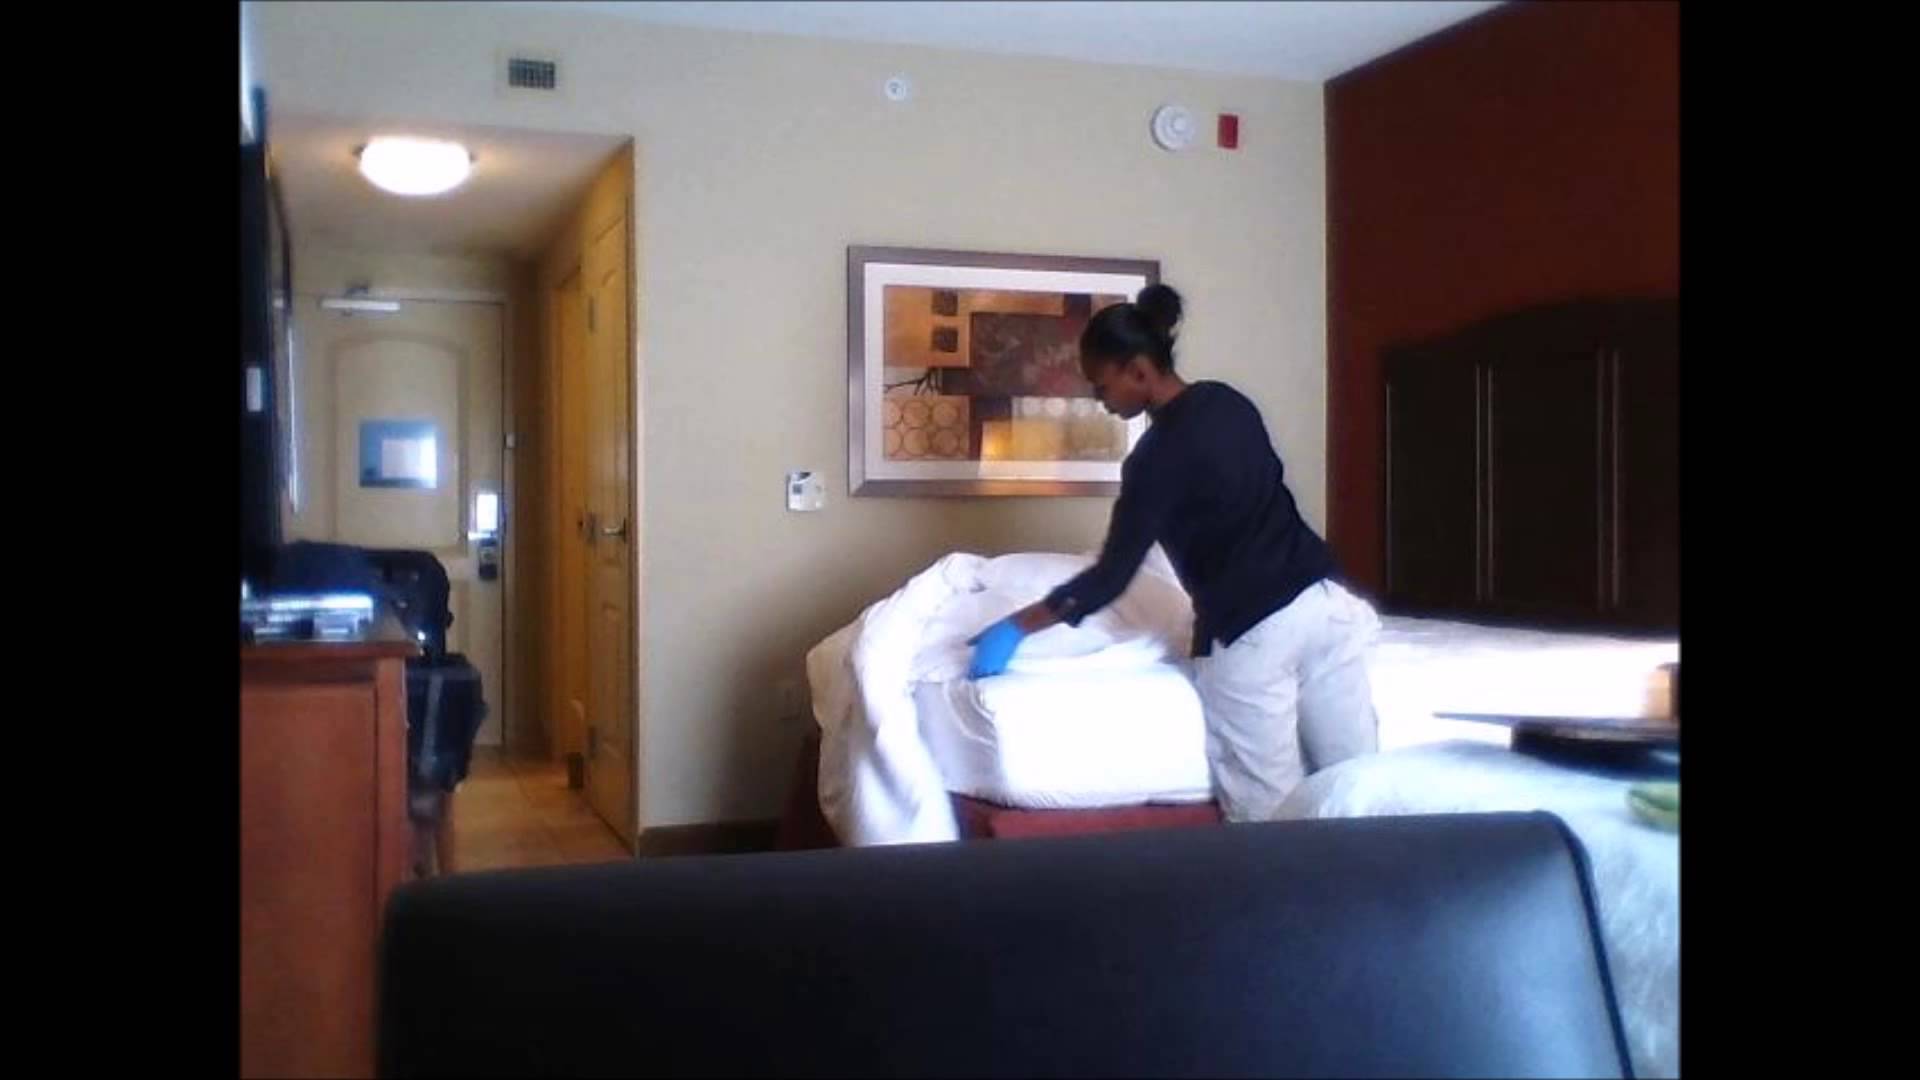 Ezt műveli a szobalány a vendég üres szobájában! – videó